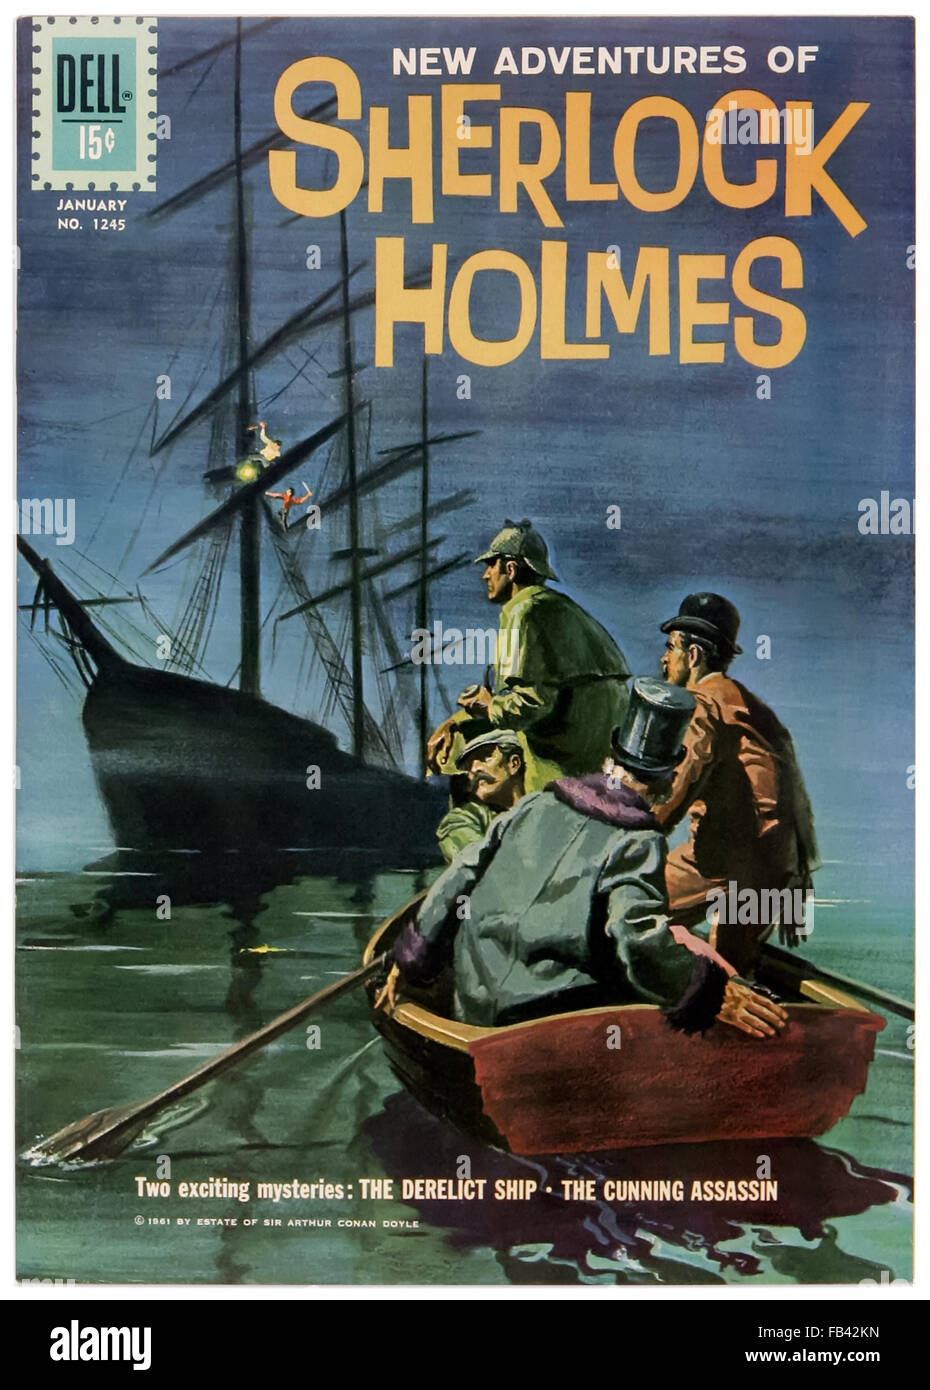 " Le nuove avventure di Sherlock Holmes' Dell Comics problema 1169 Gennaio 1961 fumetto adattamento illustrato da Frank Giacoia (1924-1988) dotate di 'la nave abbandonati' e 'l'astuzia assassino". Vedere la descrizione per maggiori informazioni. Foto Stock